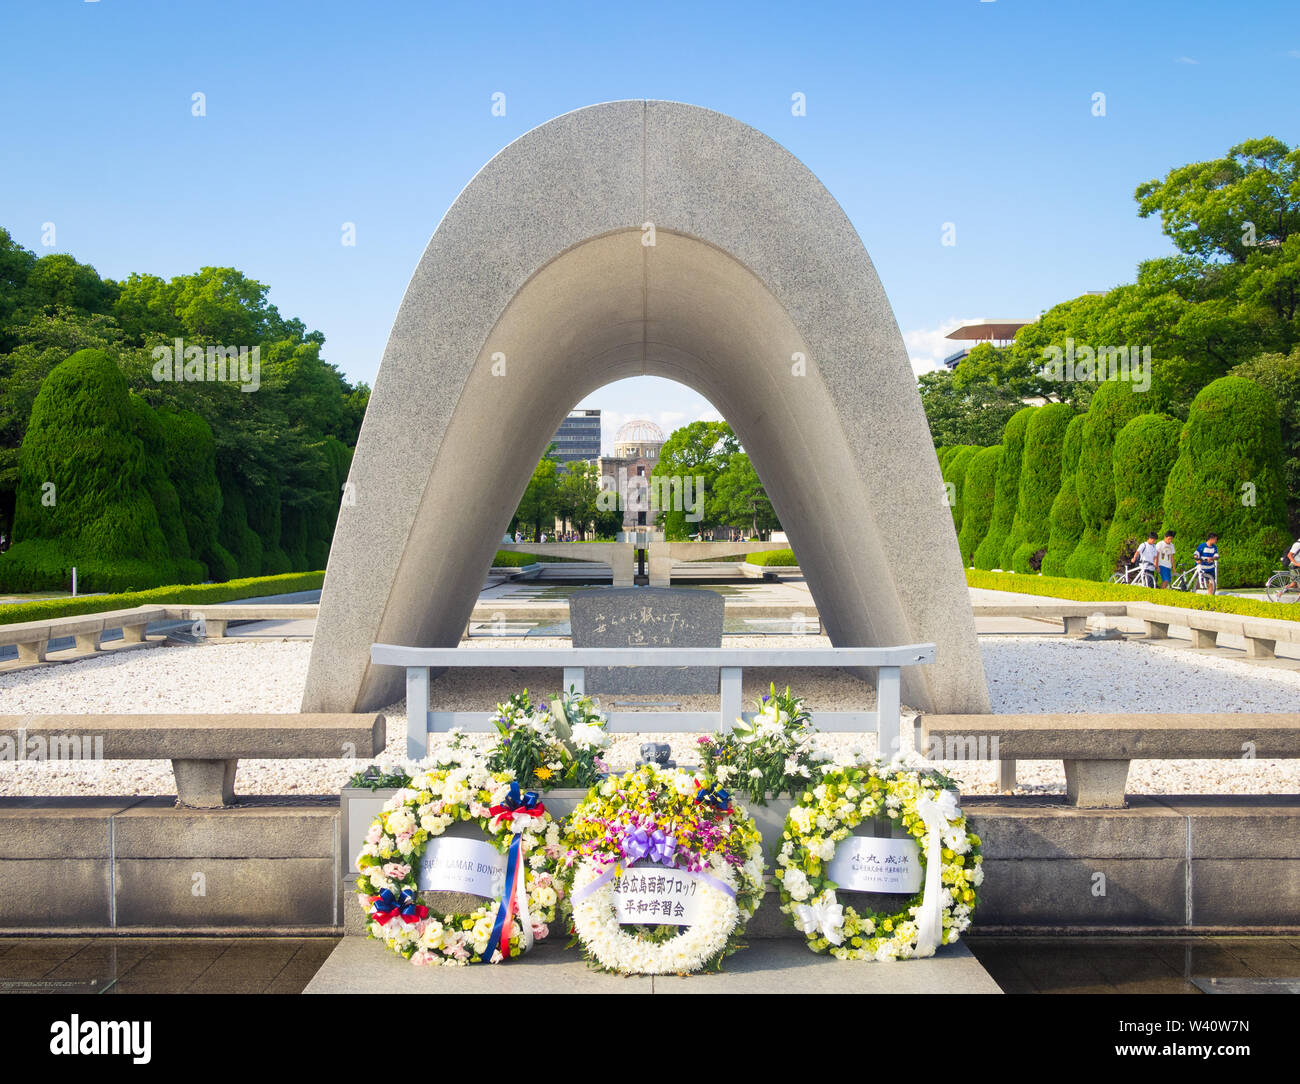 Hiroshima Peace Memorial Park (広島平和記念公園 Hiroshima Heiwa Kinen Kōen), avec le Mémorial de la paix, Centograph, flamme et A-Bomb Dome. Hiroshima, Japon. Banque D'Images